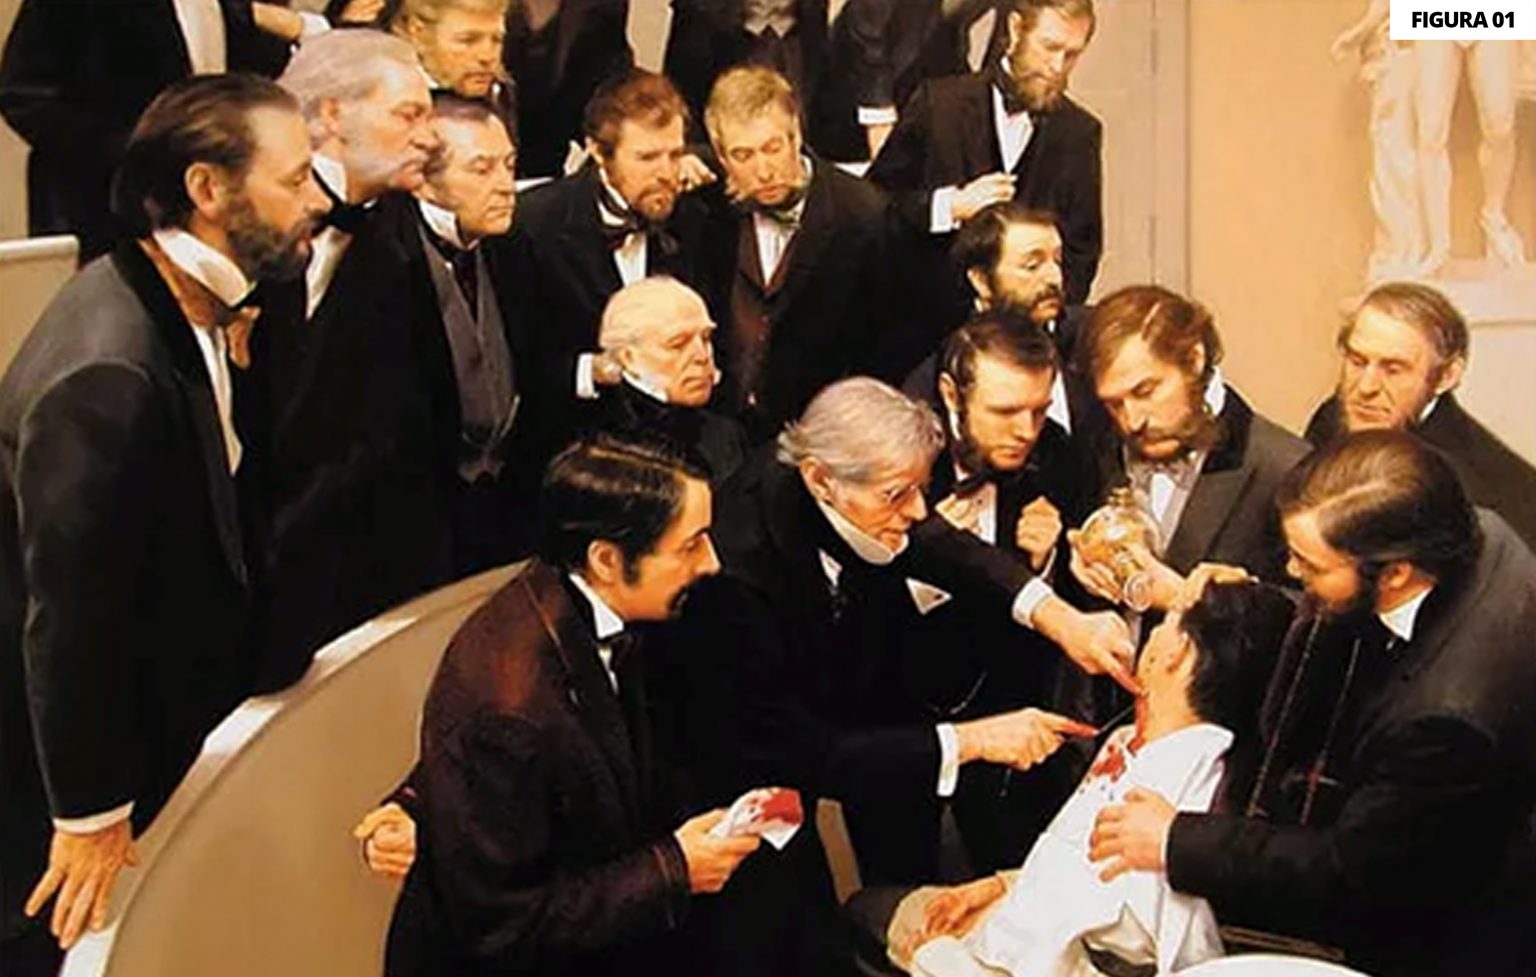 Figura 1 - Tela retratando uma anestesia com éter em 1846